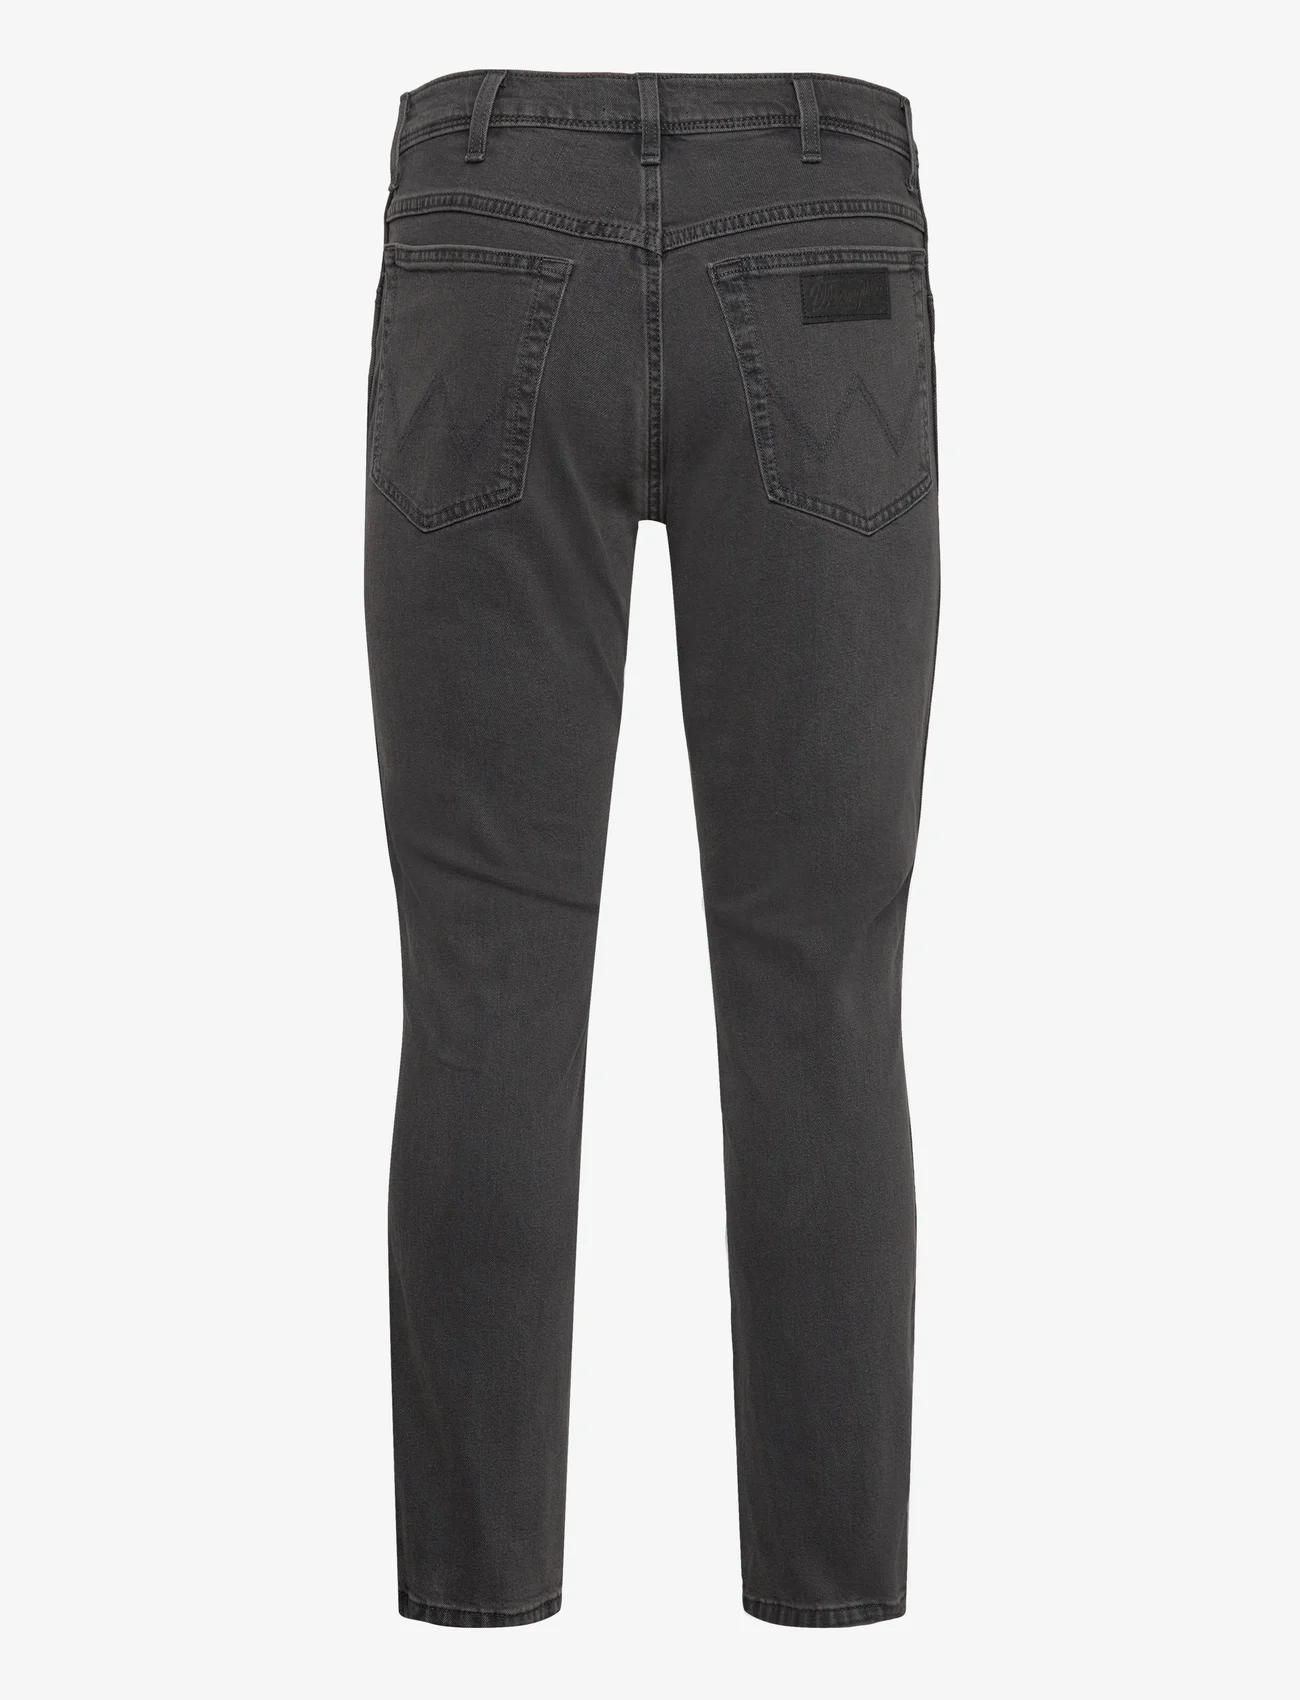 Wrangler - TEXAS SLIM - slim jeans - first degree - 1